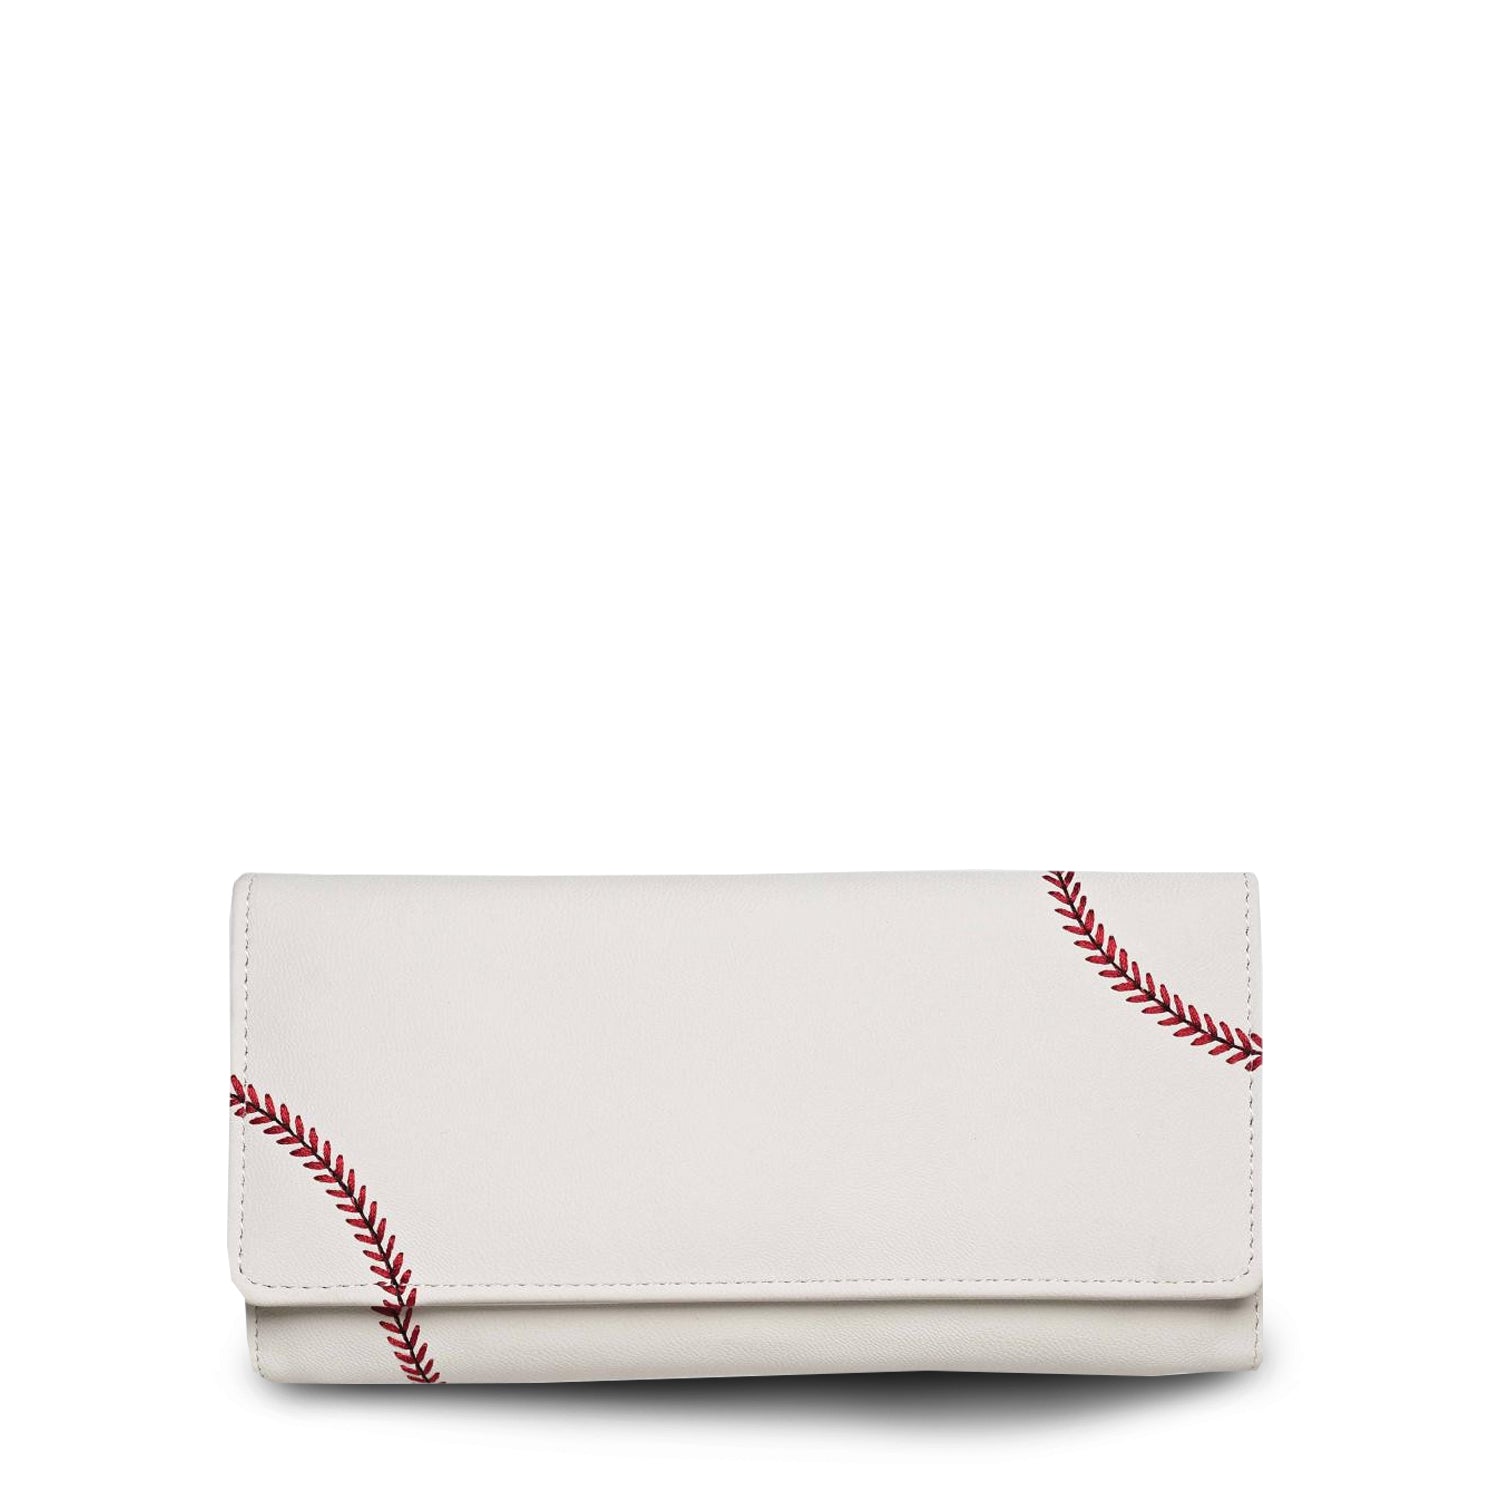 Baseball Material Women's Wallet